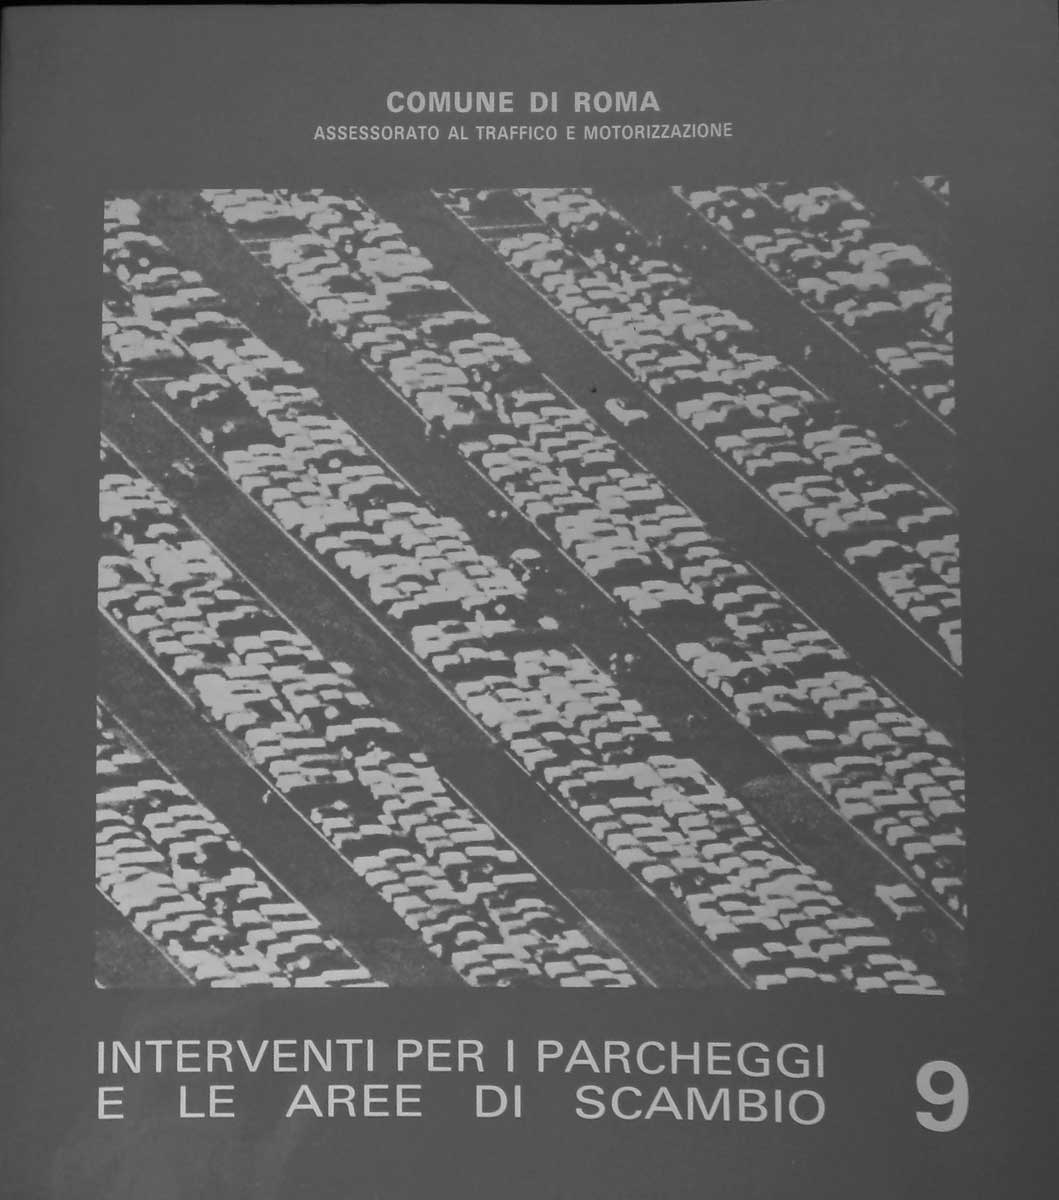 7 - Interventi per i parcheggi e le aree di scambio, collana di documentazione della Ripartizione XIV - Mobilità e traffico del Comune di Roma, 1985 - Copertina